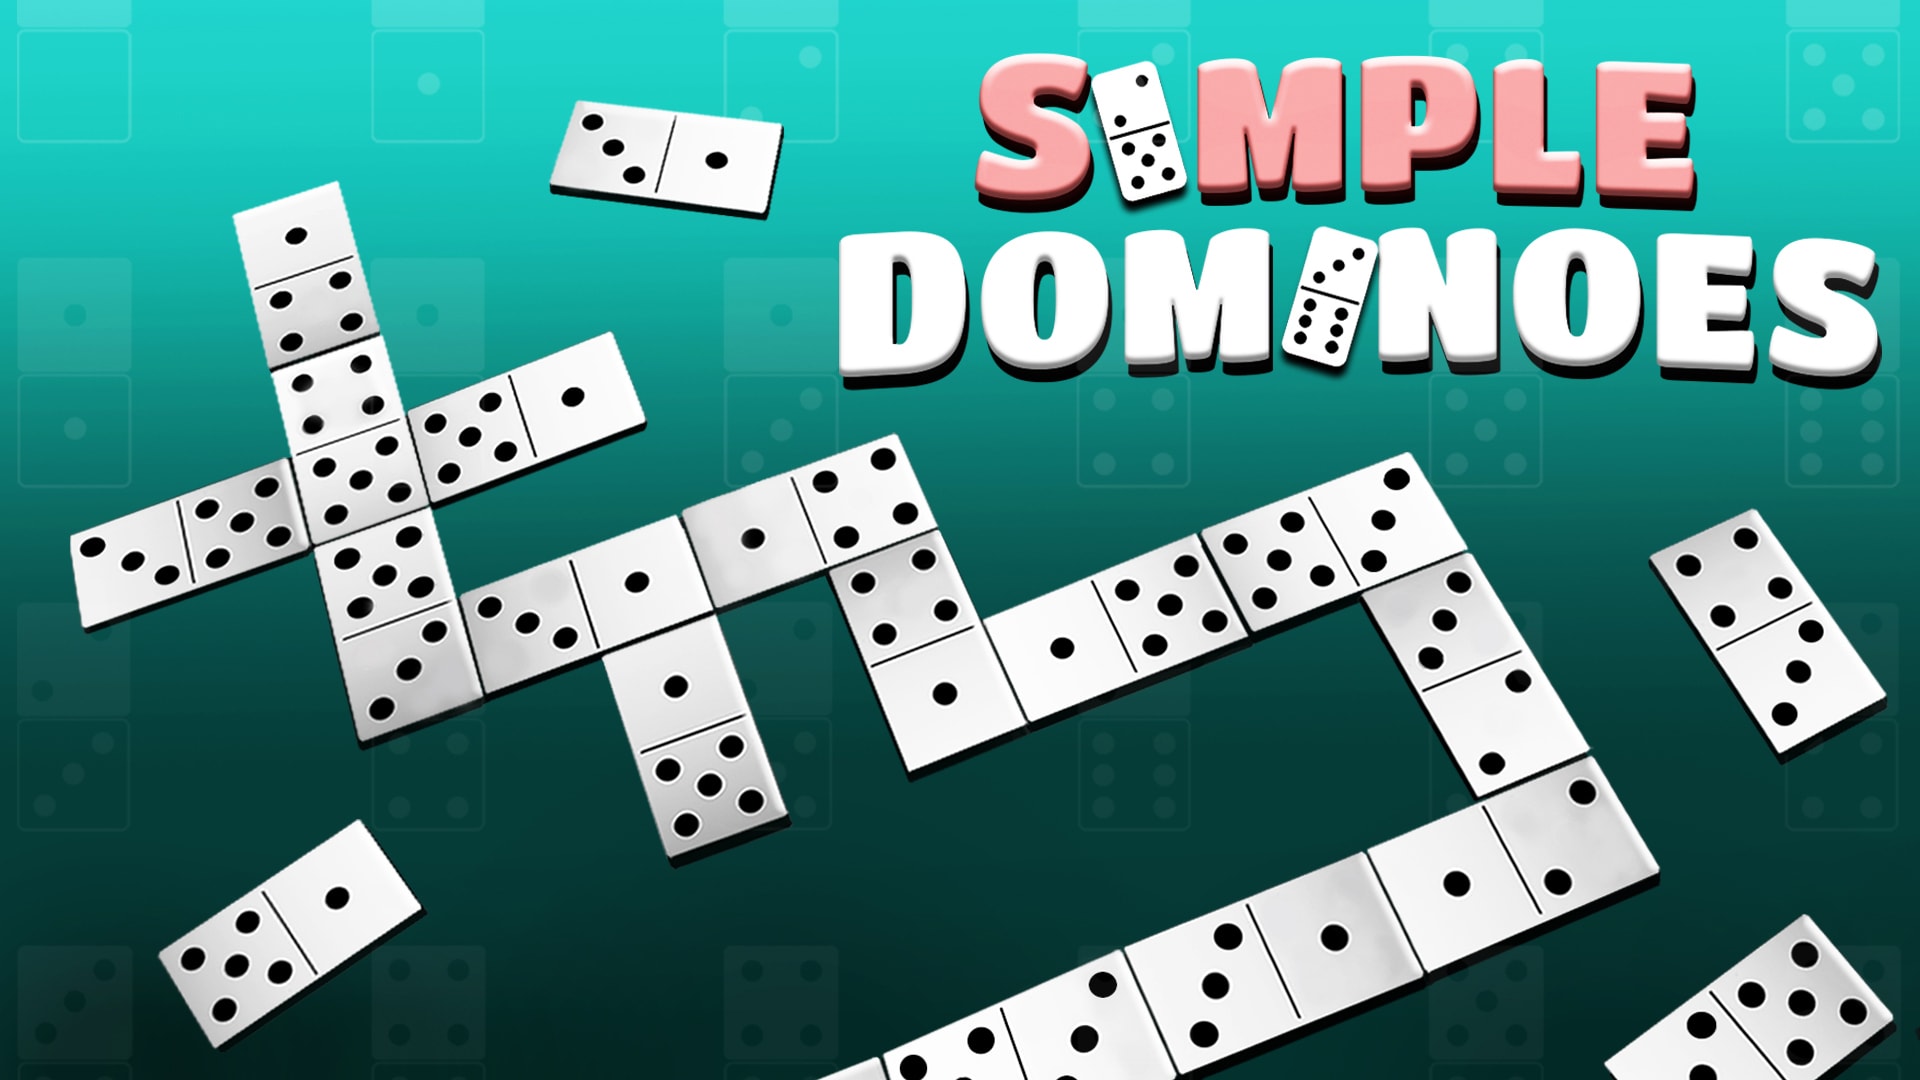 Simple Dominoes